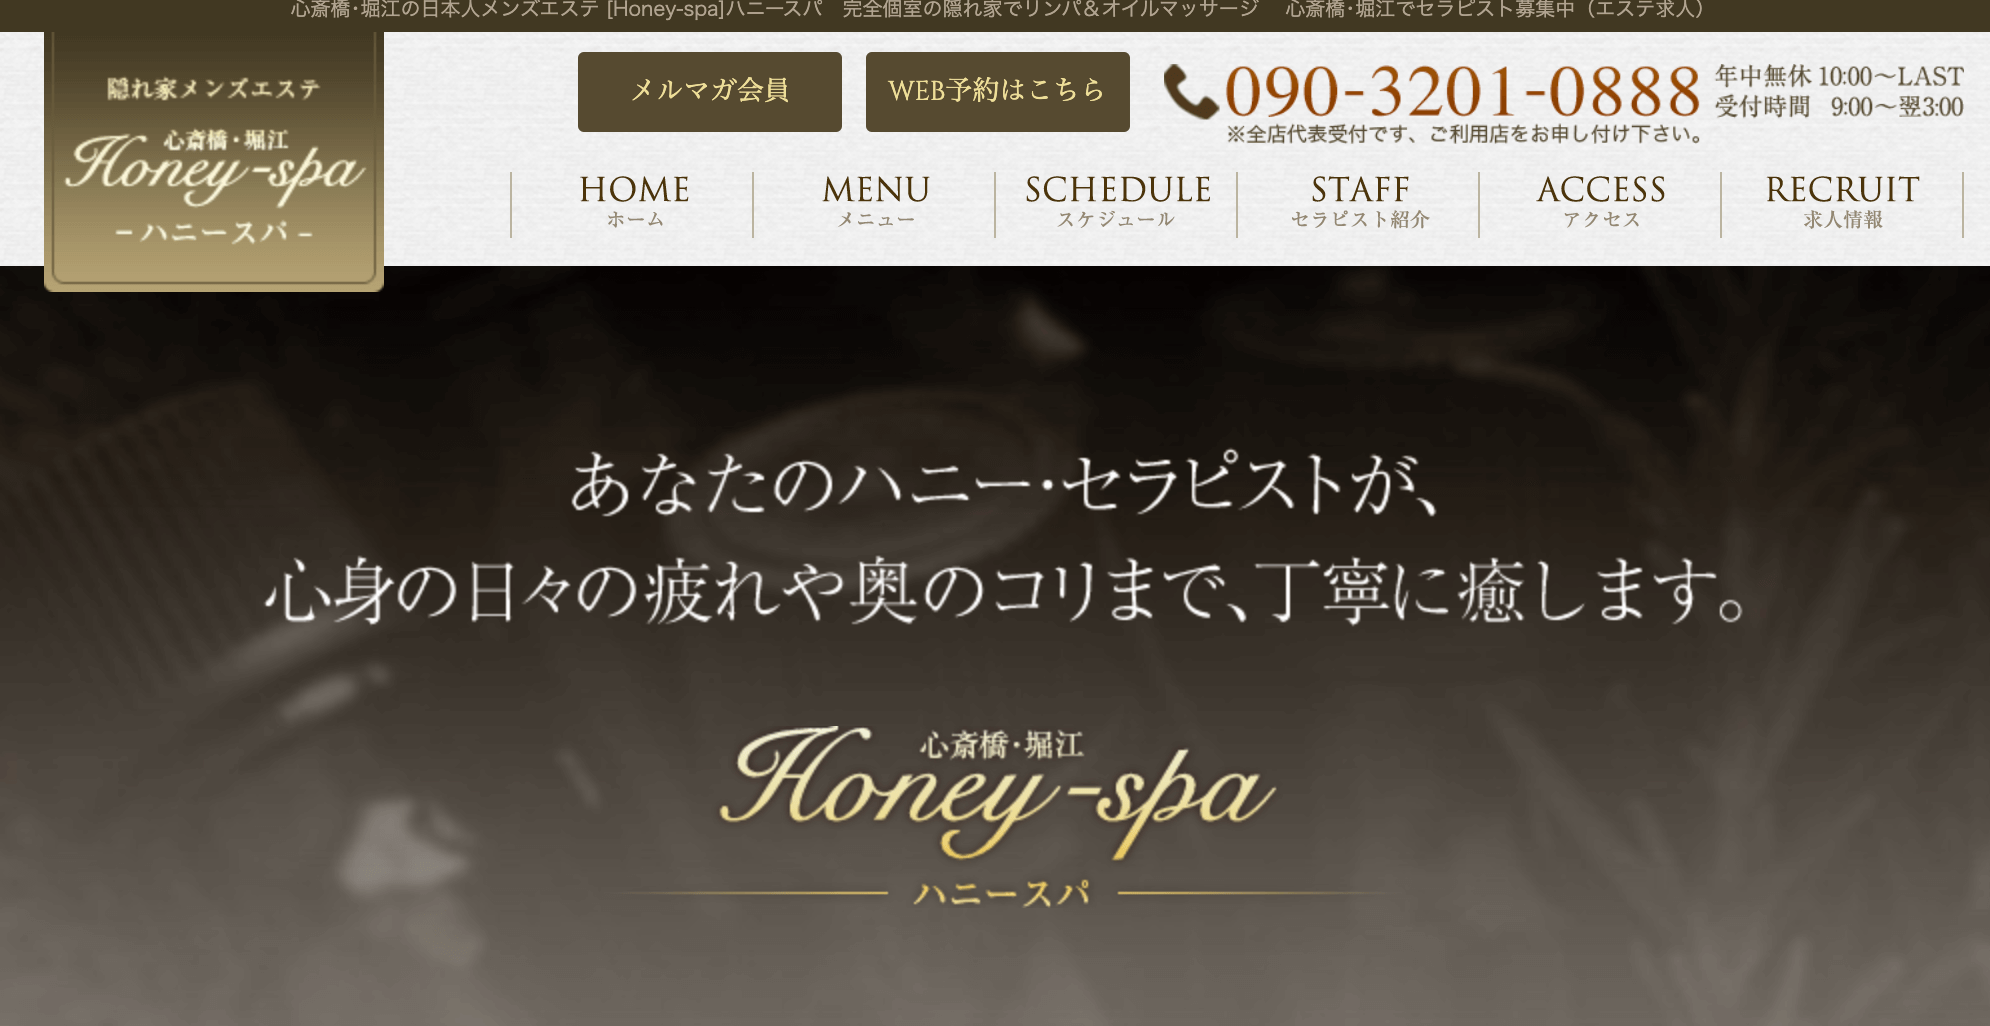 Honey-spa(ハニースパ)